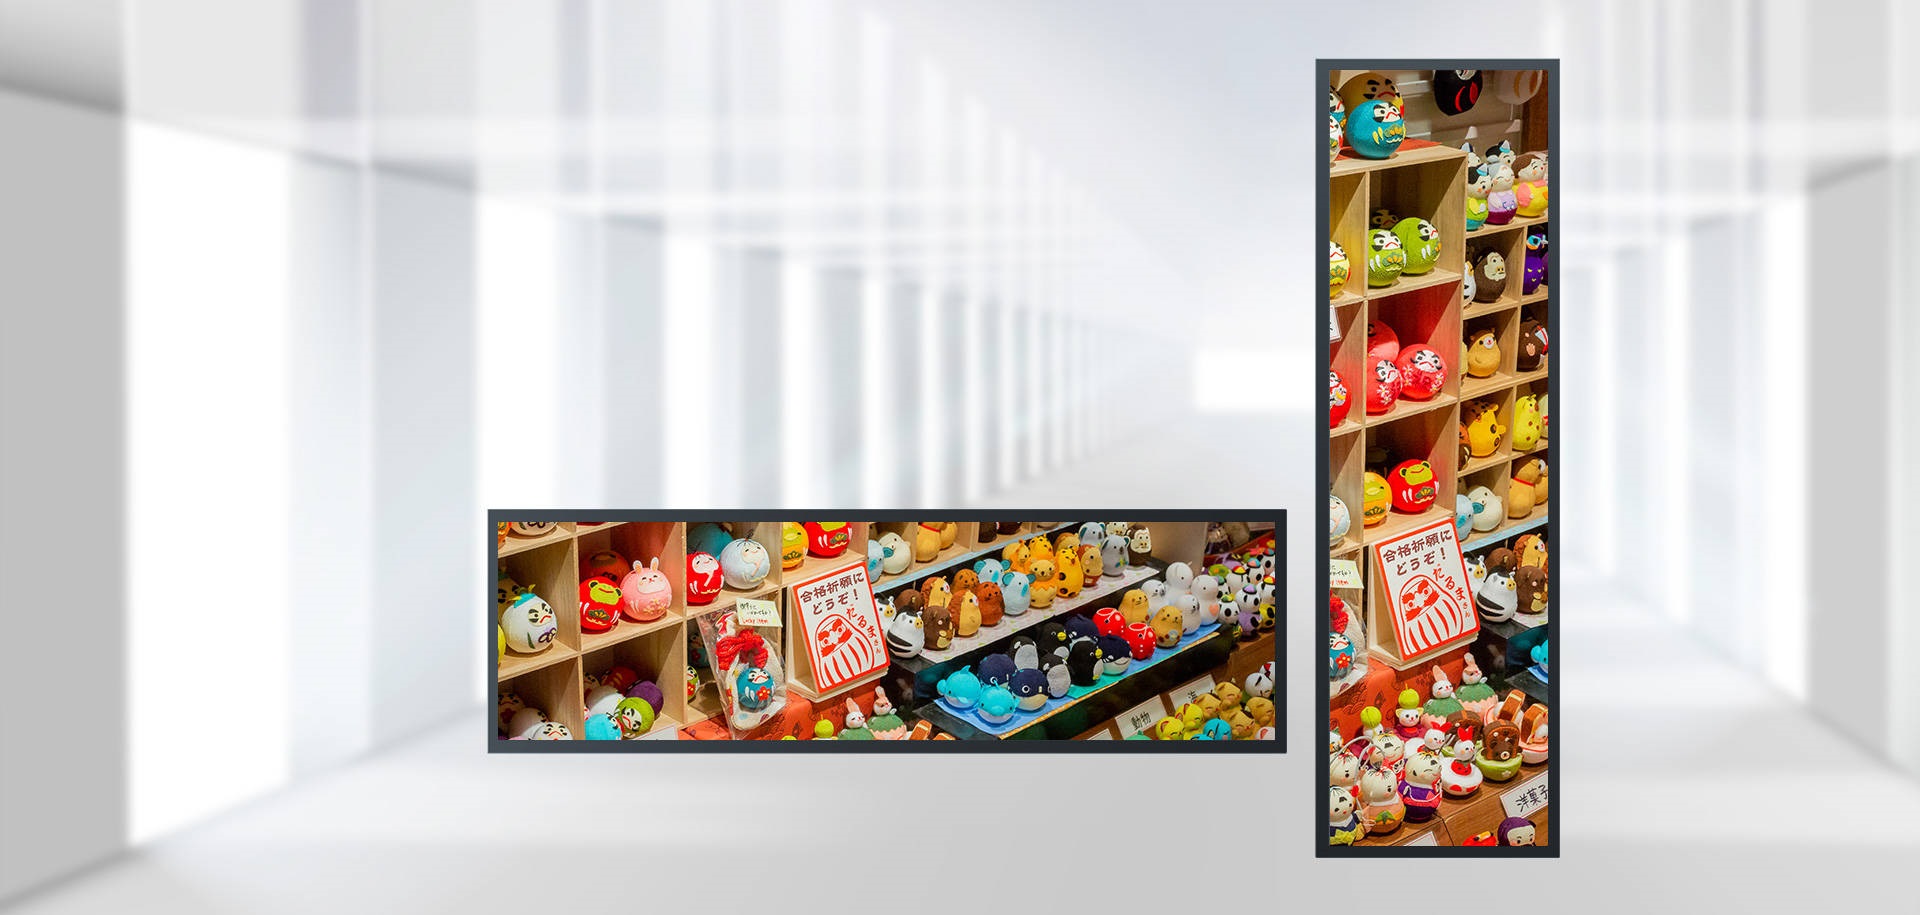 Ценность применения рекламного плеера на ЖК-экране в большом супермаркете